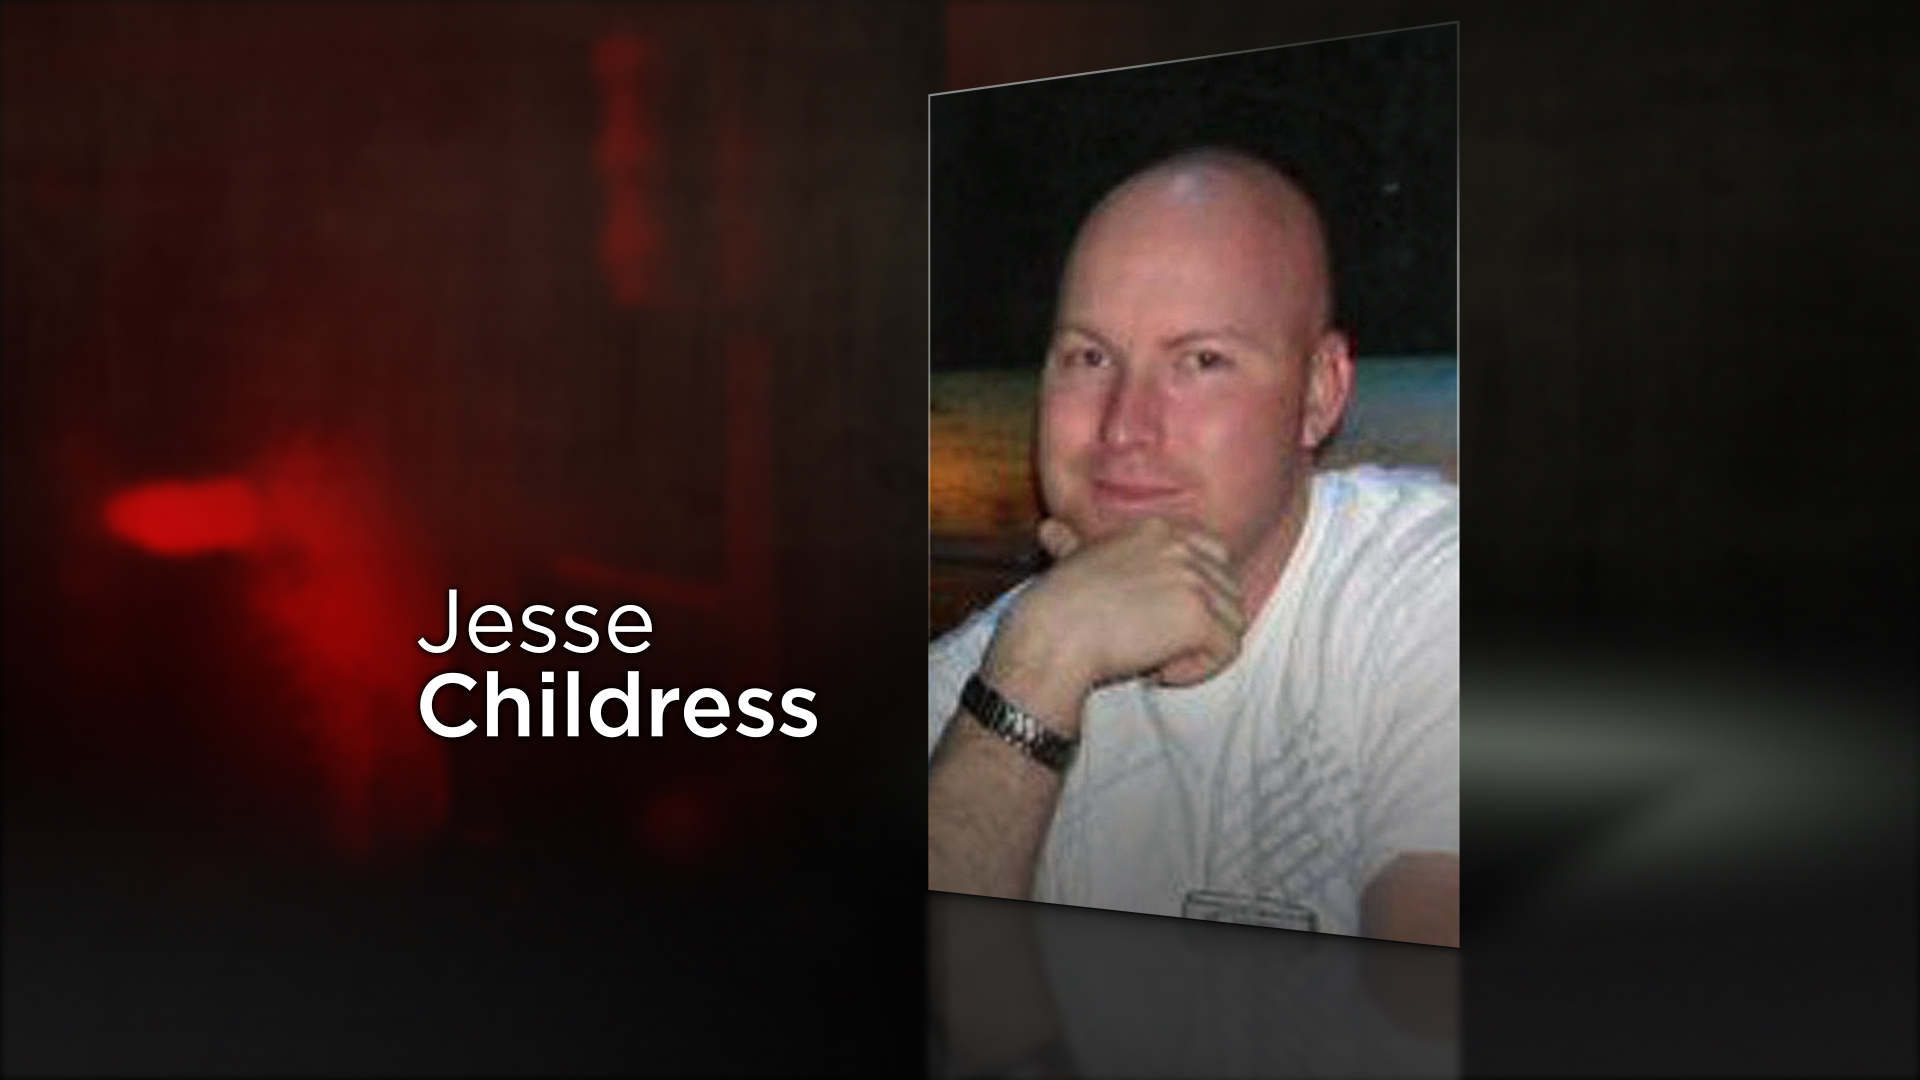 Jesse E. Childress, 29